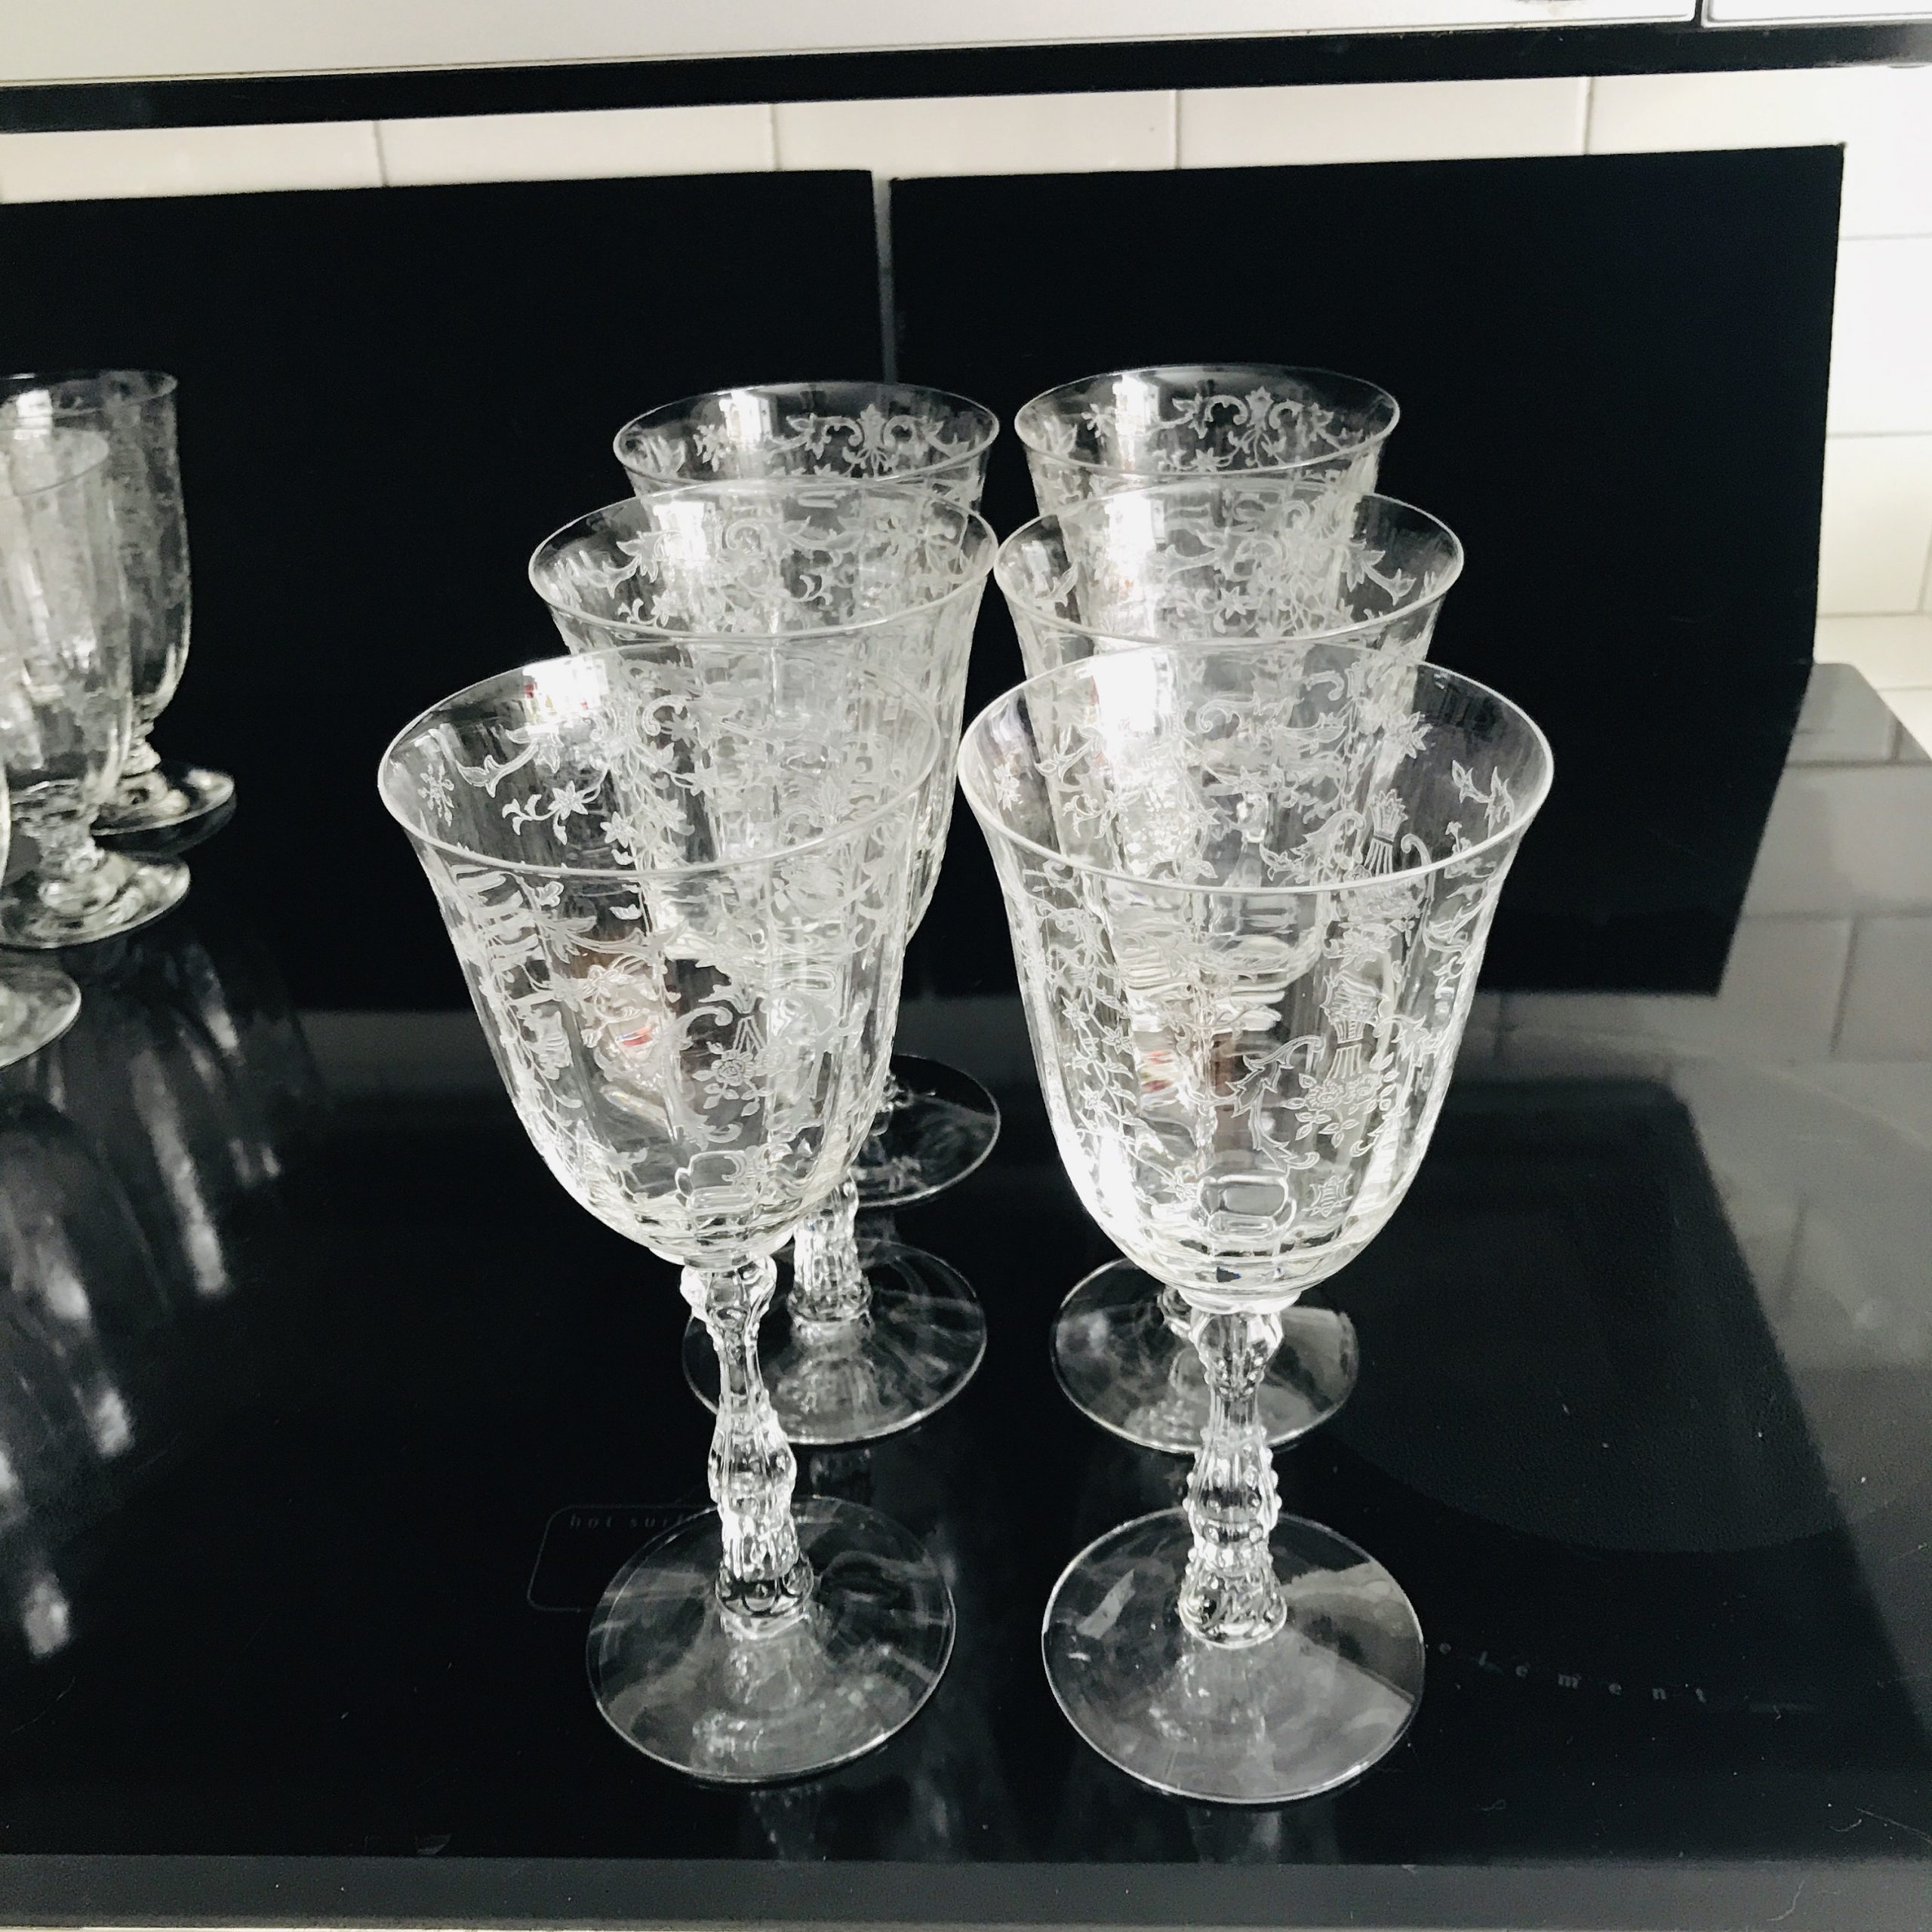 6 Vintage Etched Wine Glasses, Vintage 5 oz Claret Wine Glasses, Vintage  Wedding Champagne Glasses, Tall Etched Wine Glass